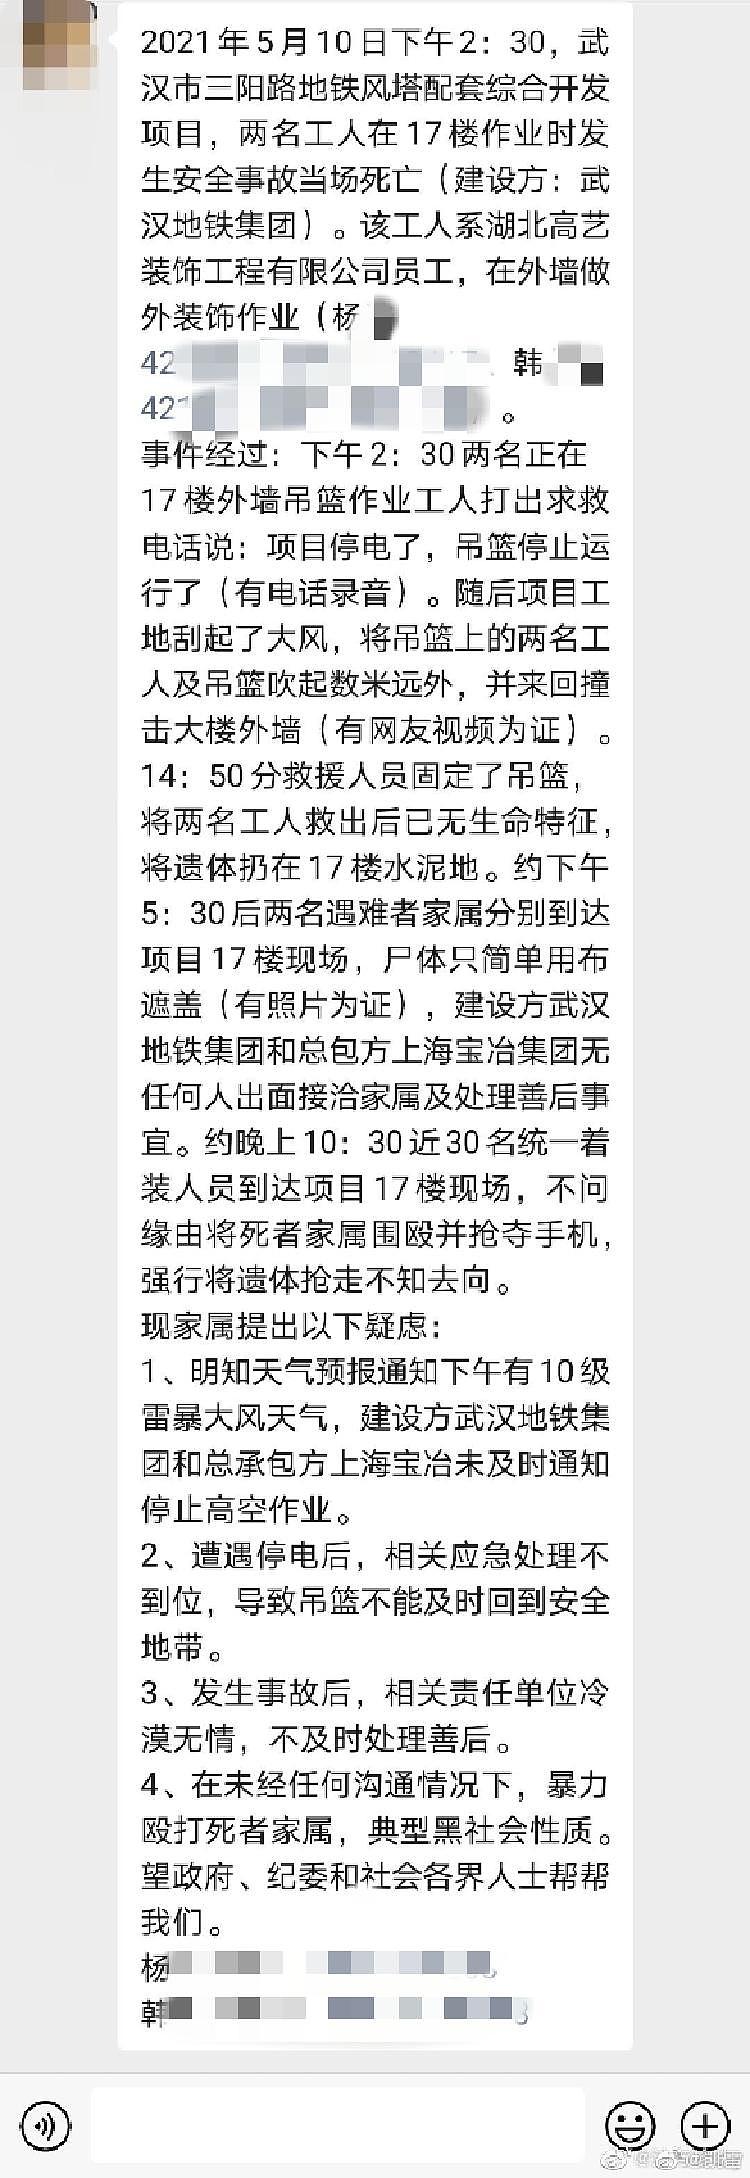 武汉大风天两名工人被困吊篮遇难 工人家属称事发后在工地被殴打、抢手机